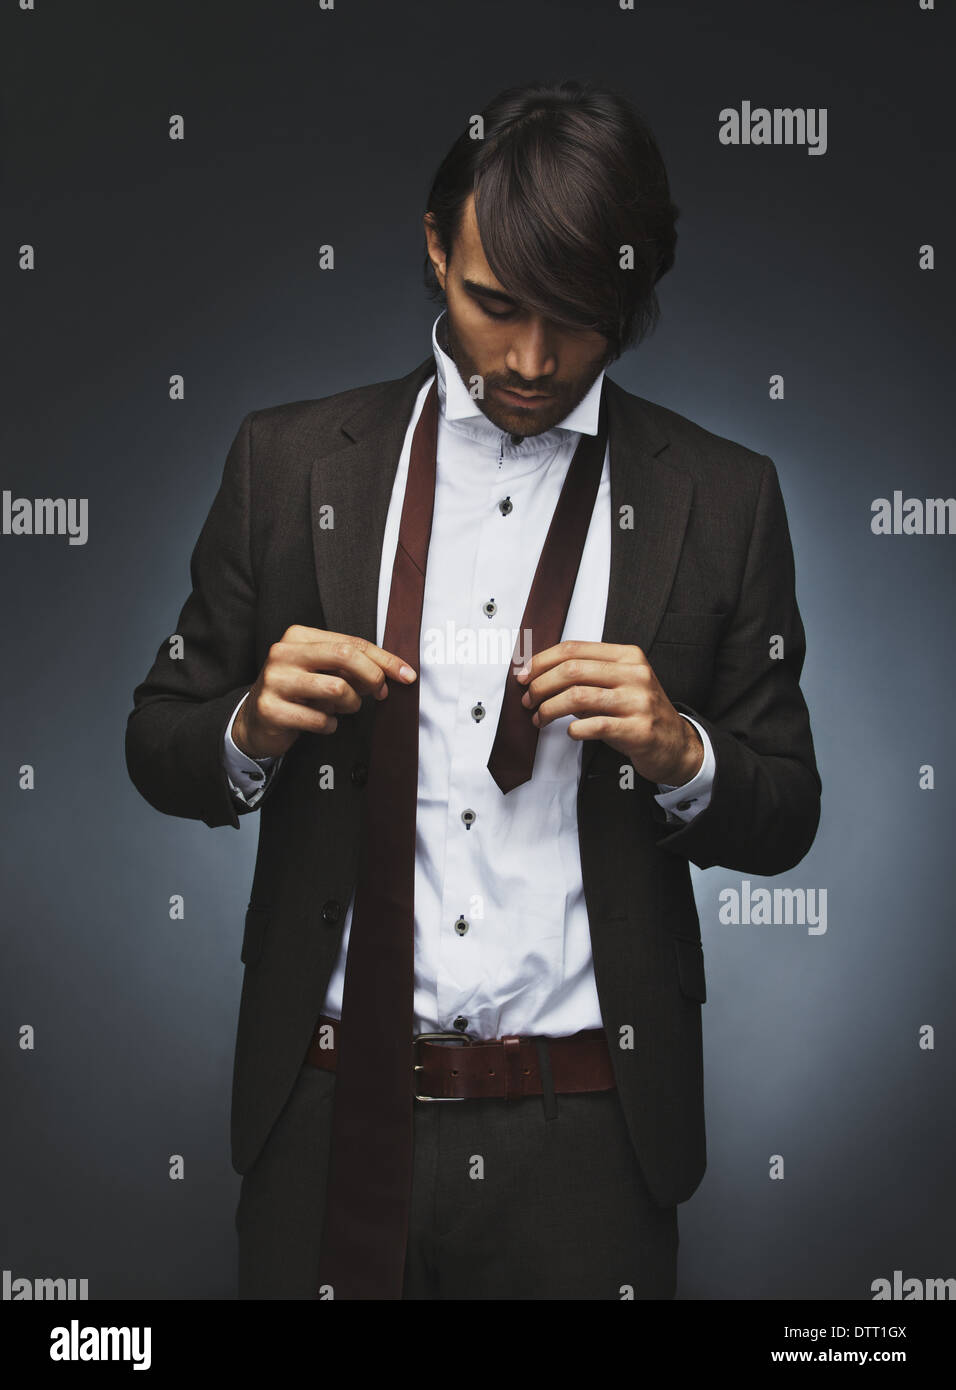 Bild der junge Geschäftsmann im Anzug, die Krawatte zu tragen. Schöne männliche Fotomodell anziehen auf schwarzem Hintergrund Stockfoto